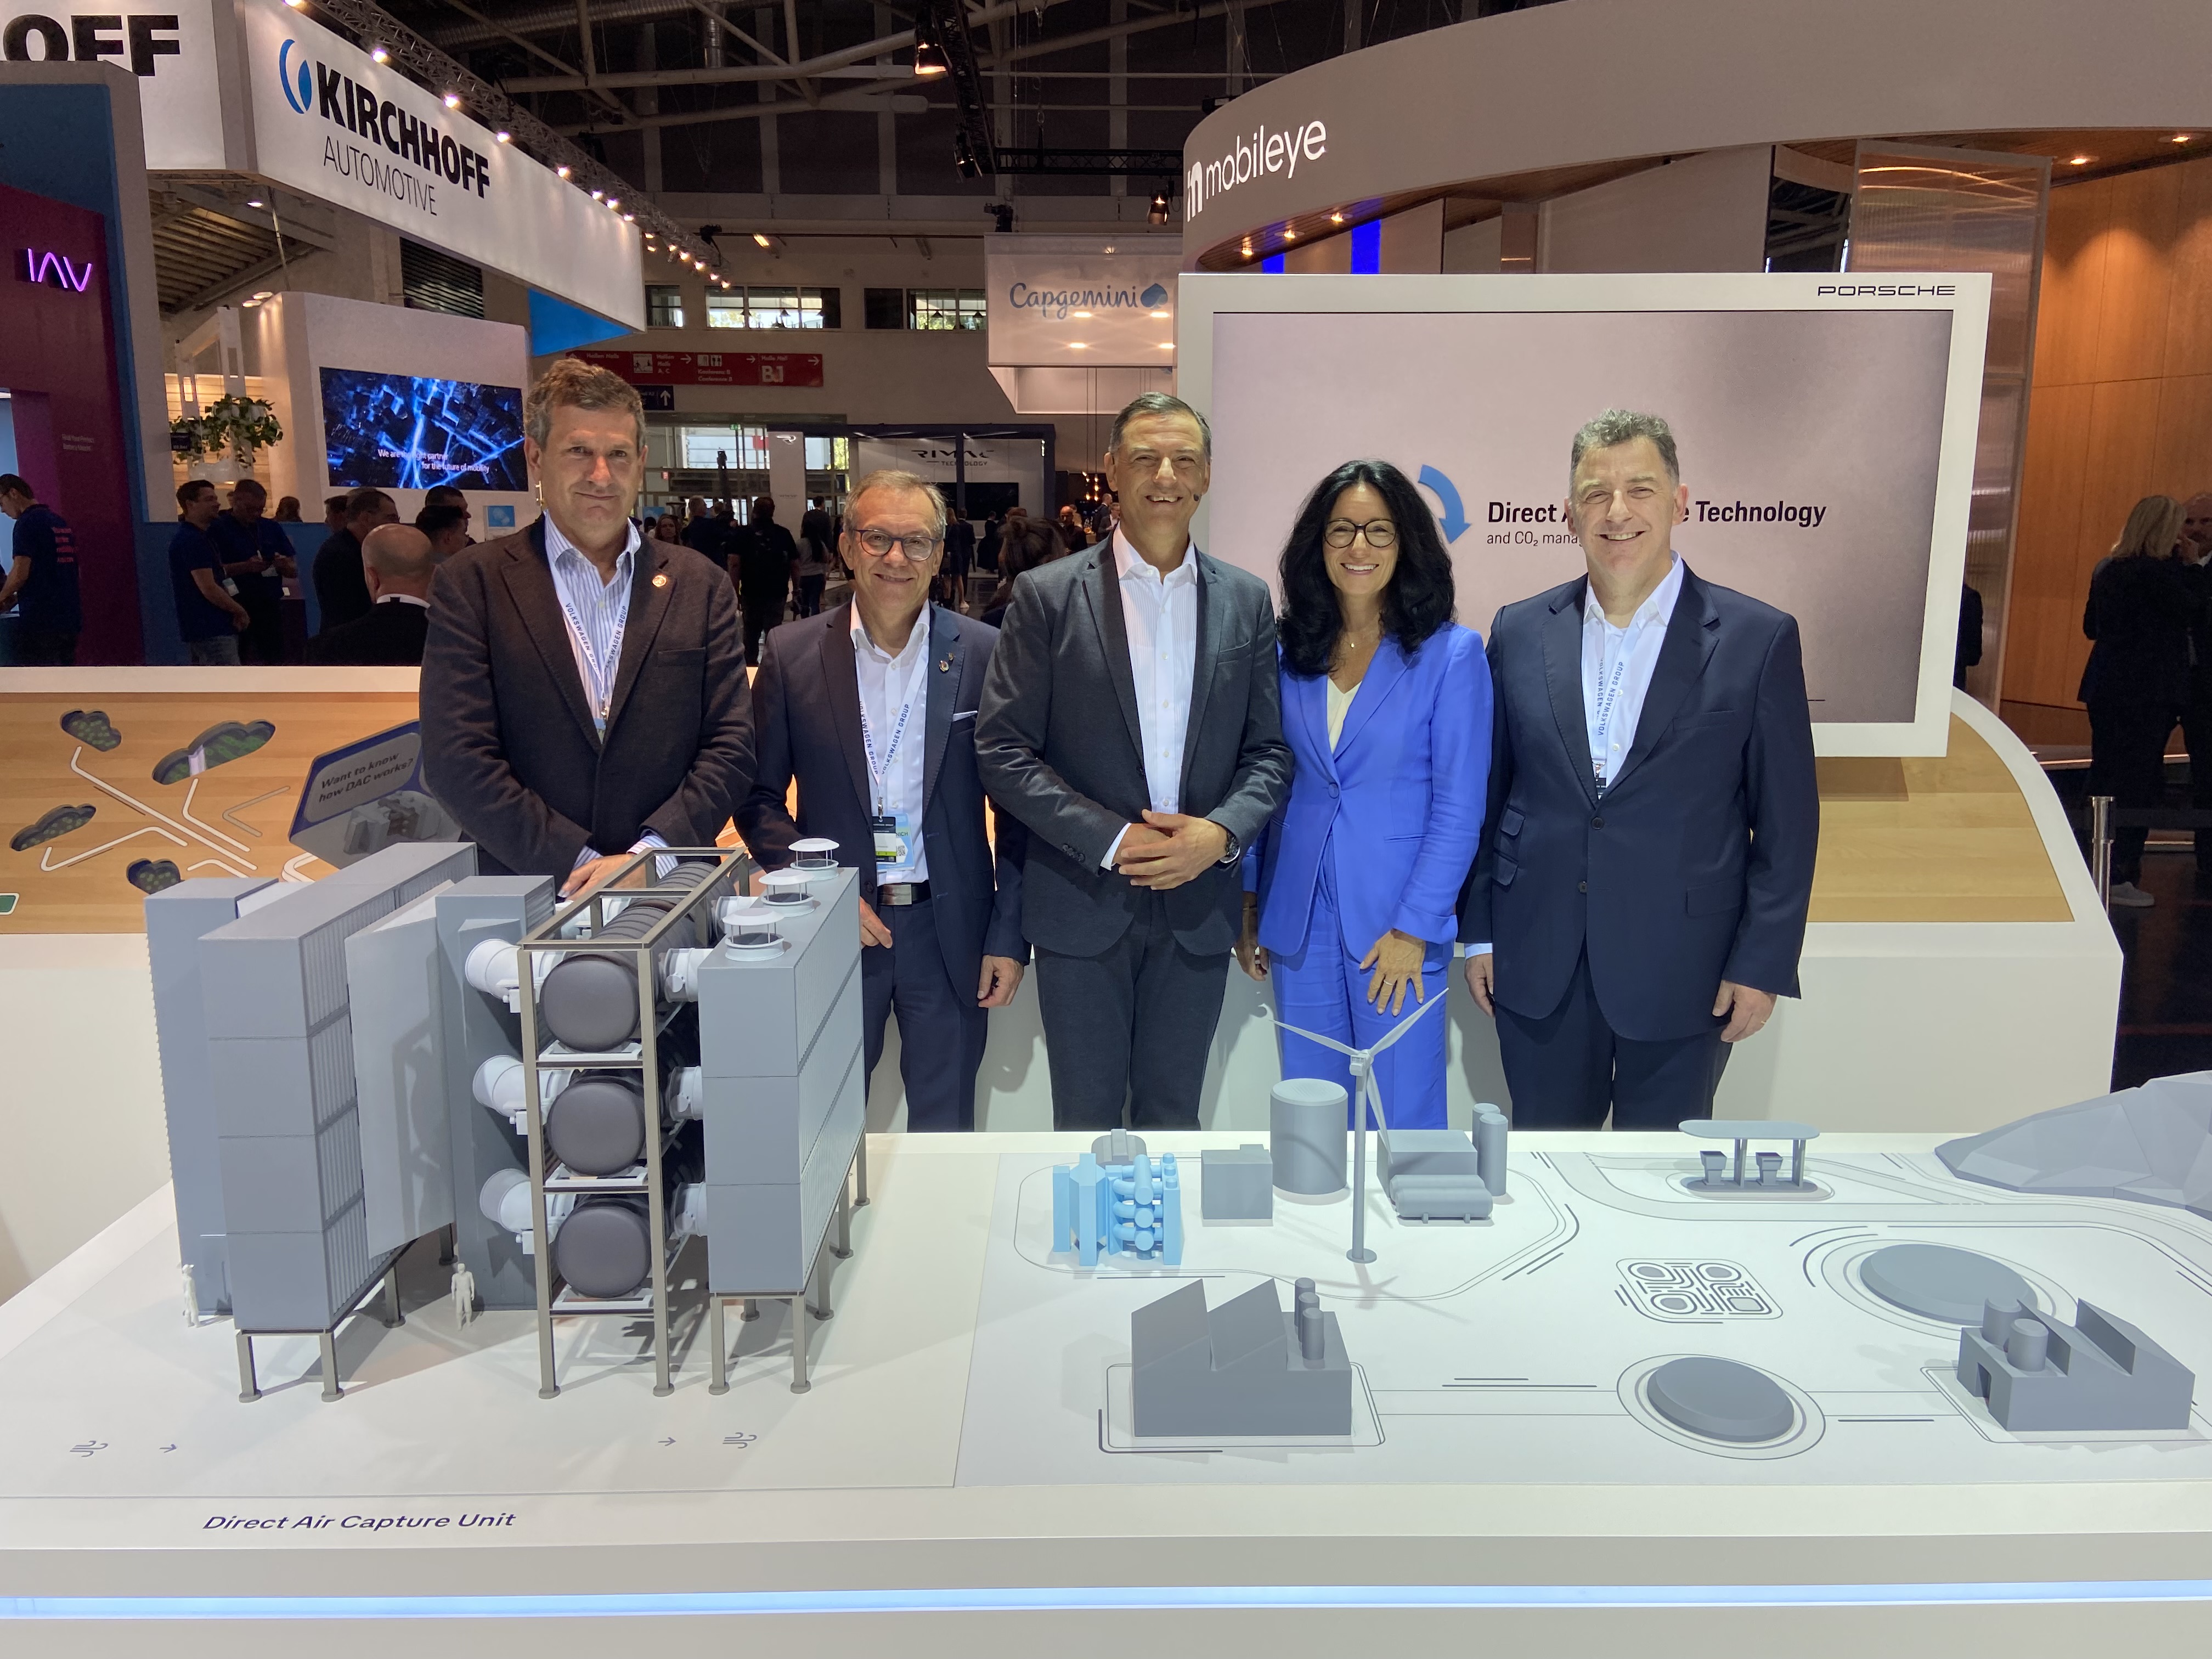 HIF Global, Porsche y Grupo Volkswagen presentan nueva unidad de captura directa de aire